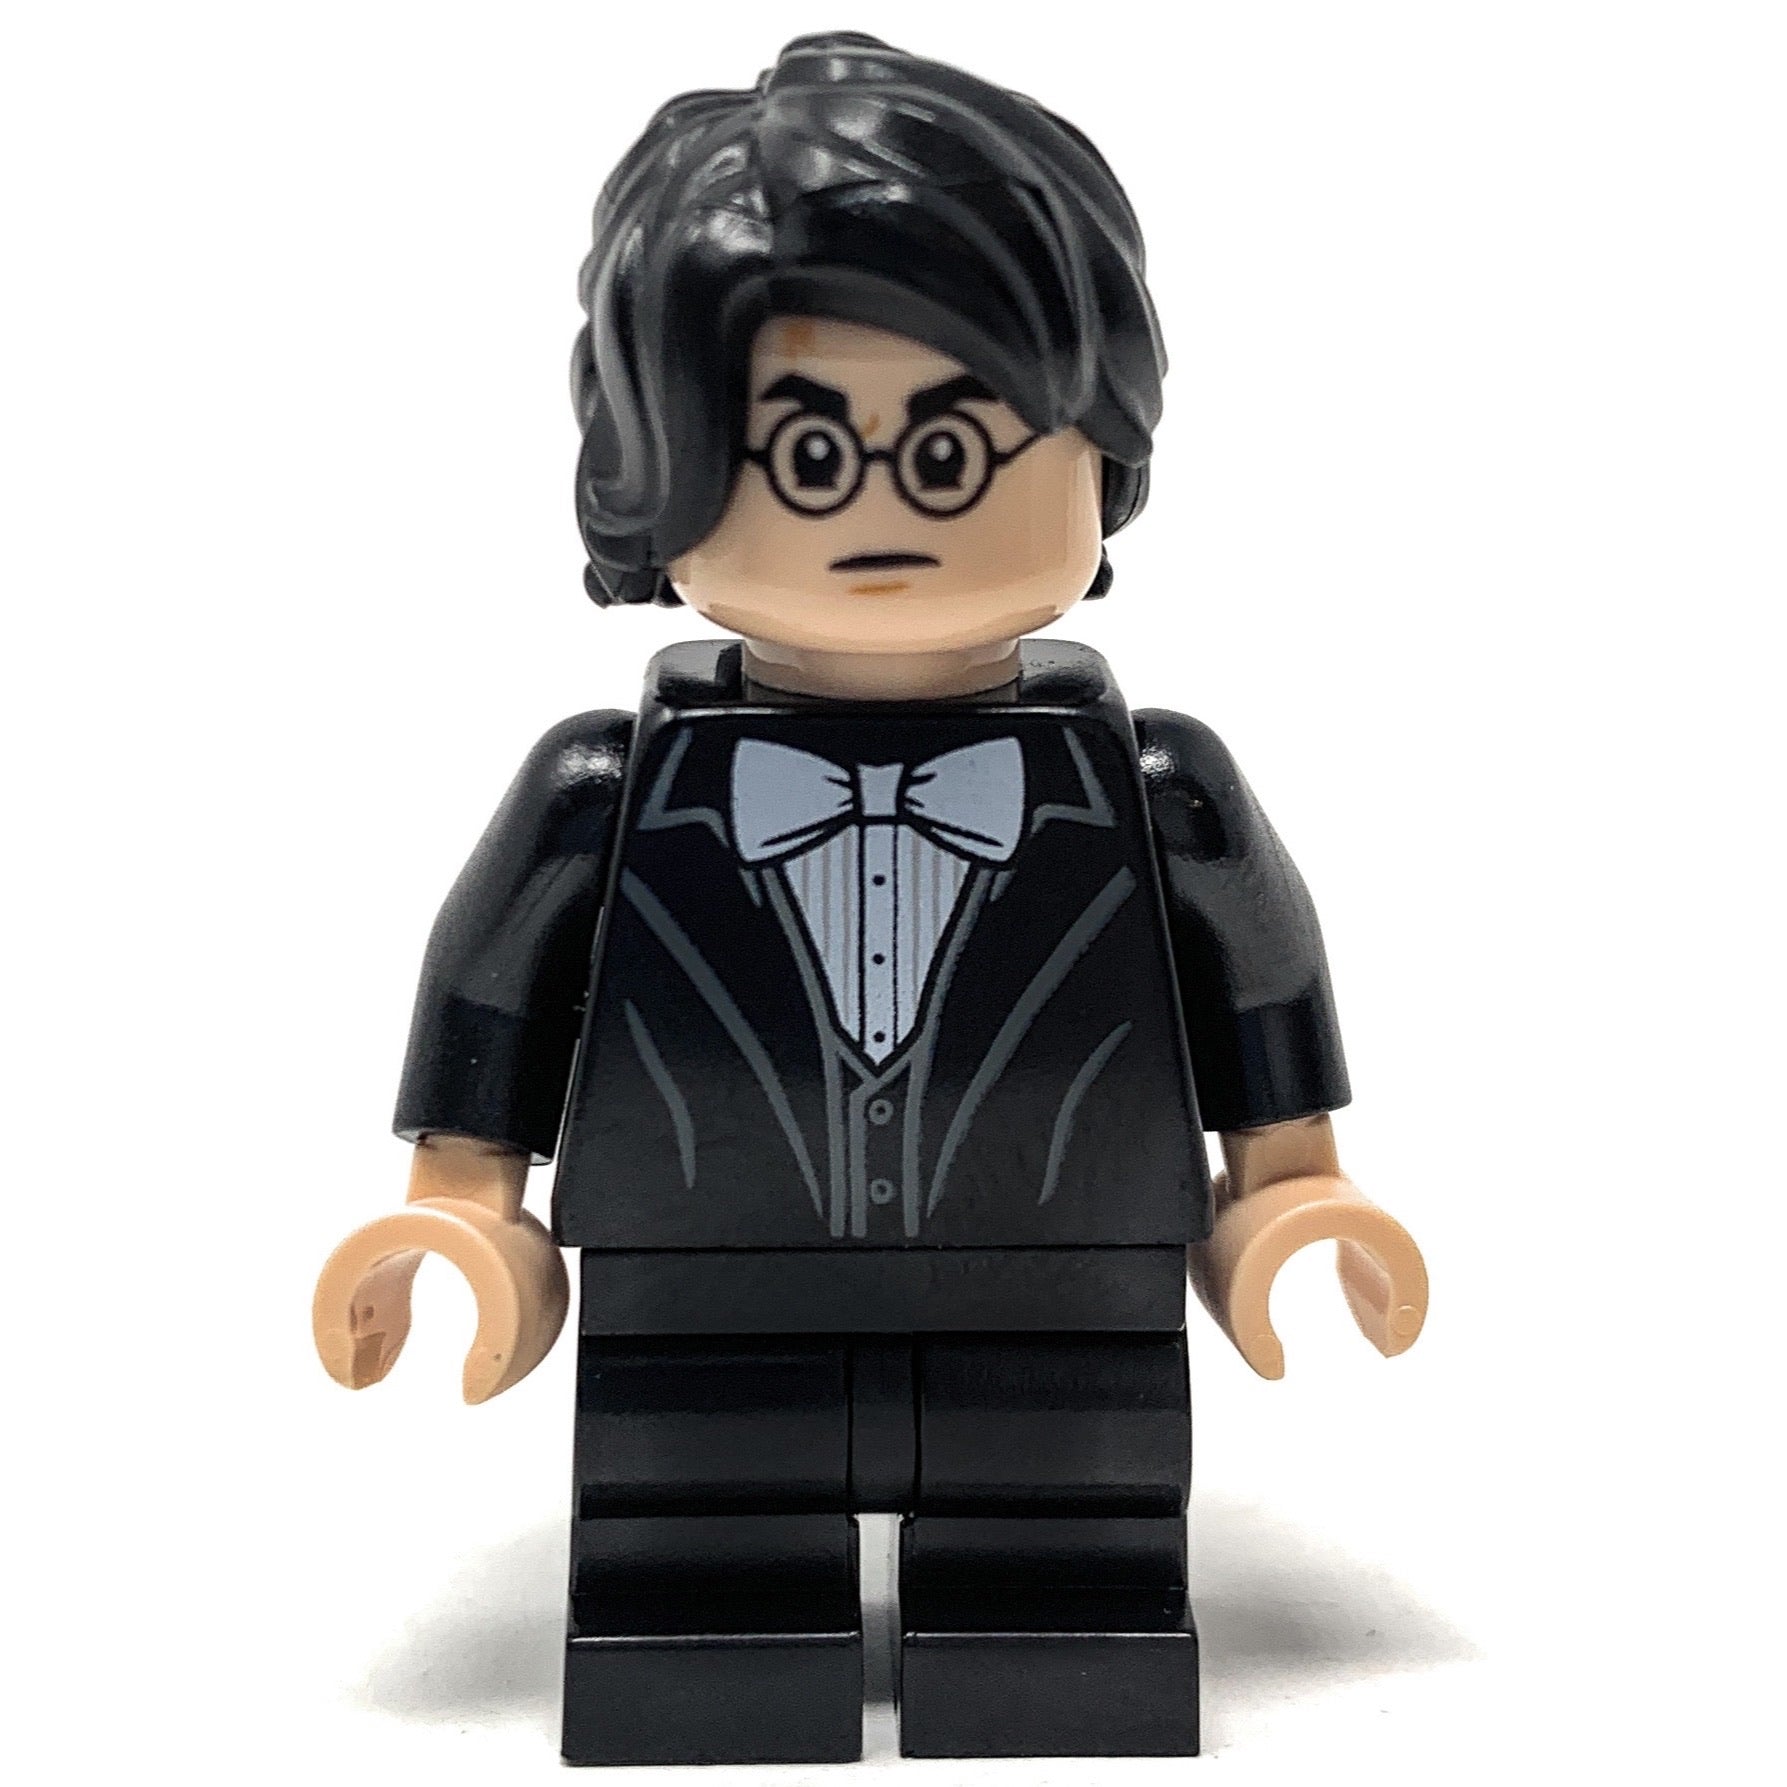 Harry Potter (Black Suit) - LEGO Harry Potter Minifigure (2019)